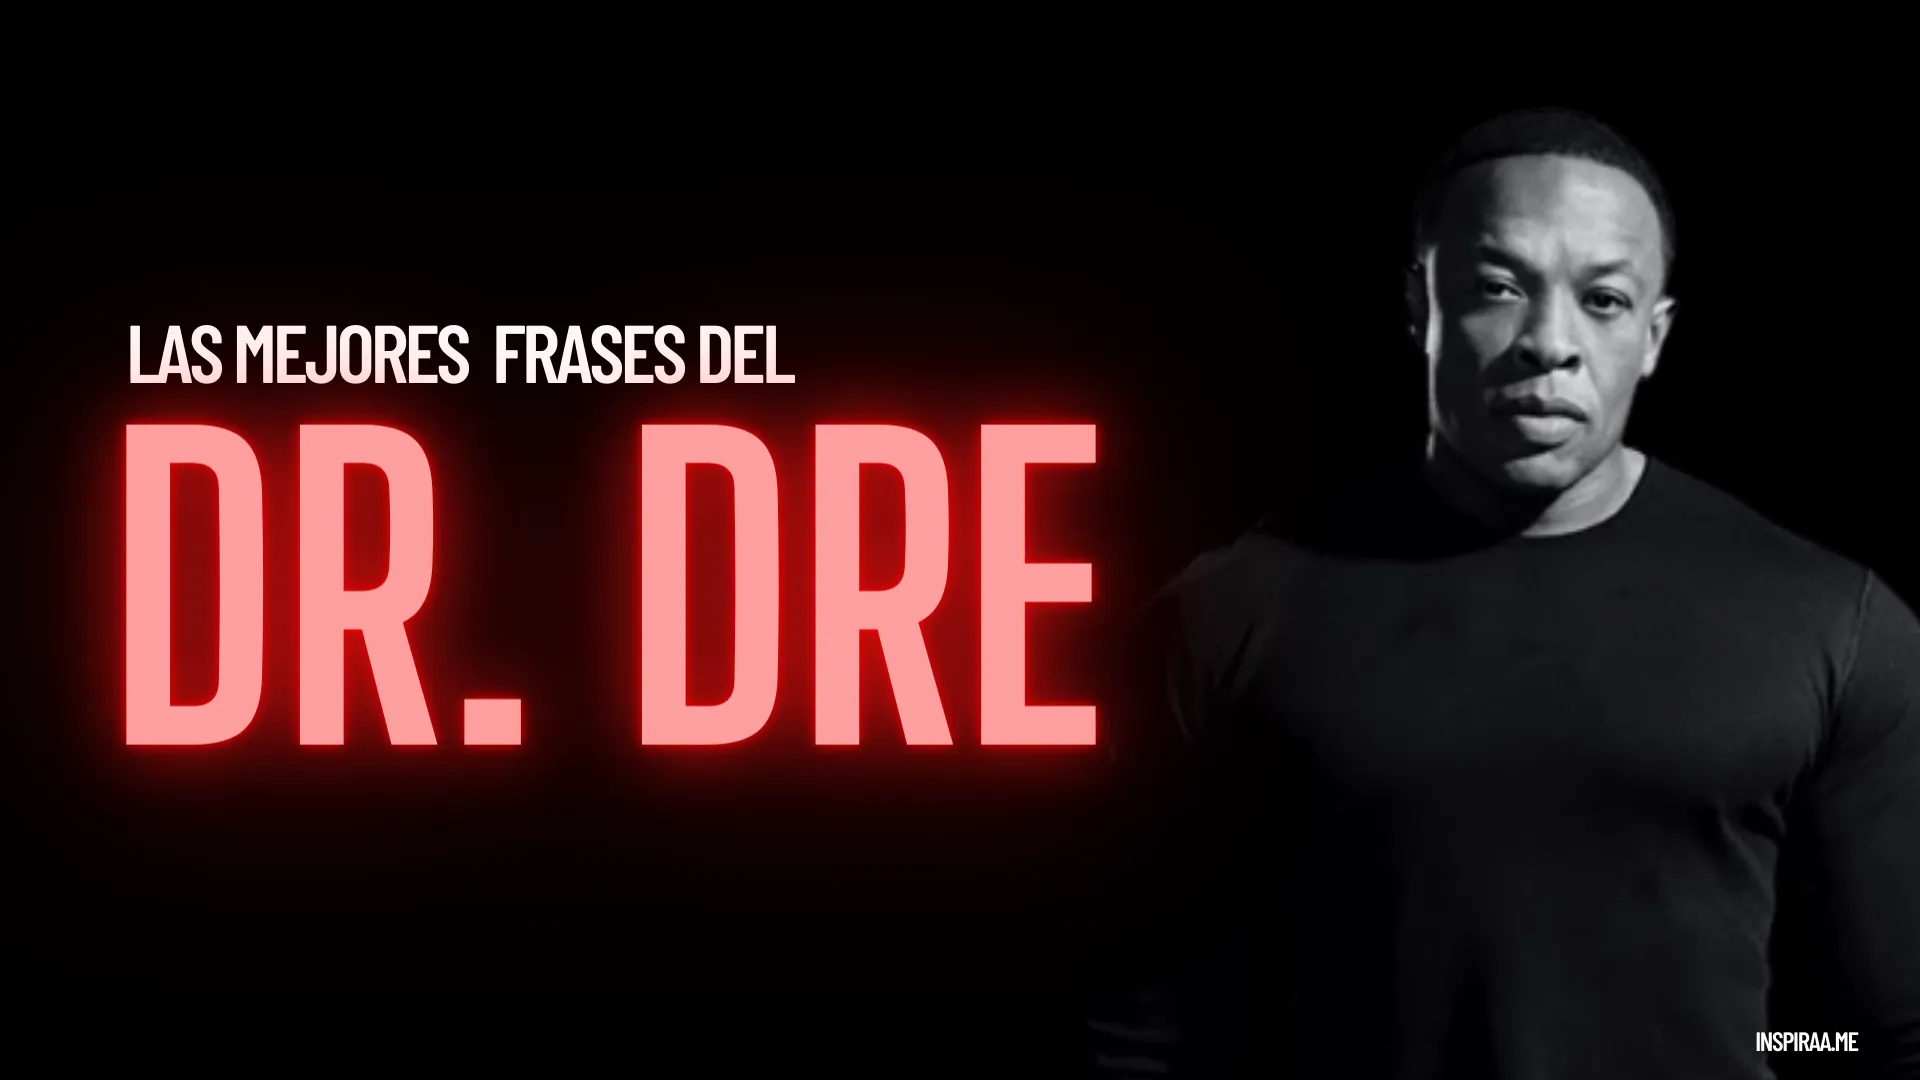 47 Frases inspiradoras del Dr Dre uno de los raperos mas populares